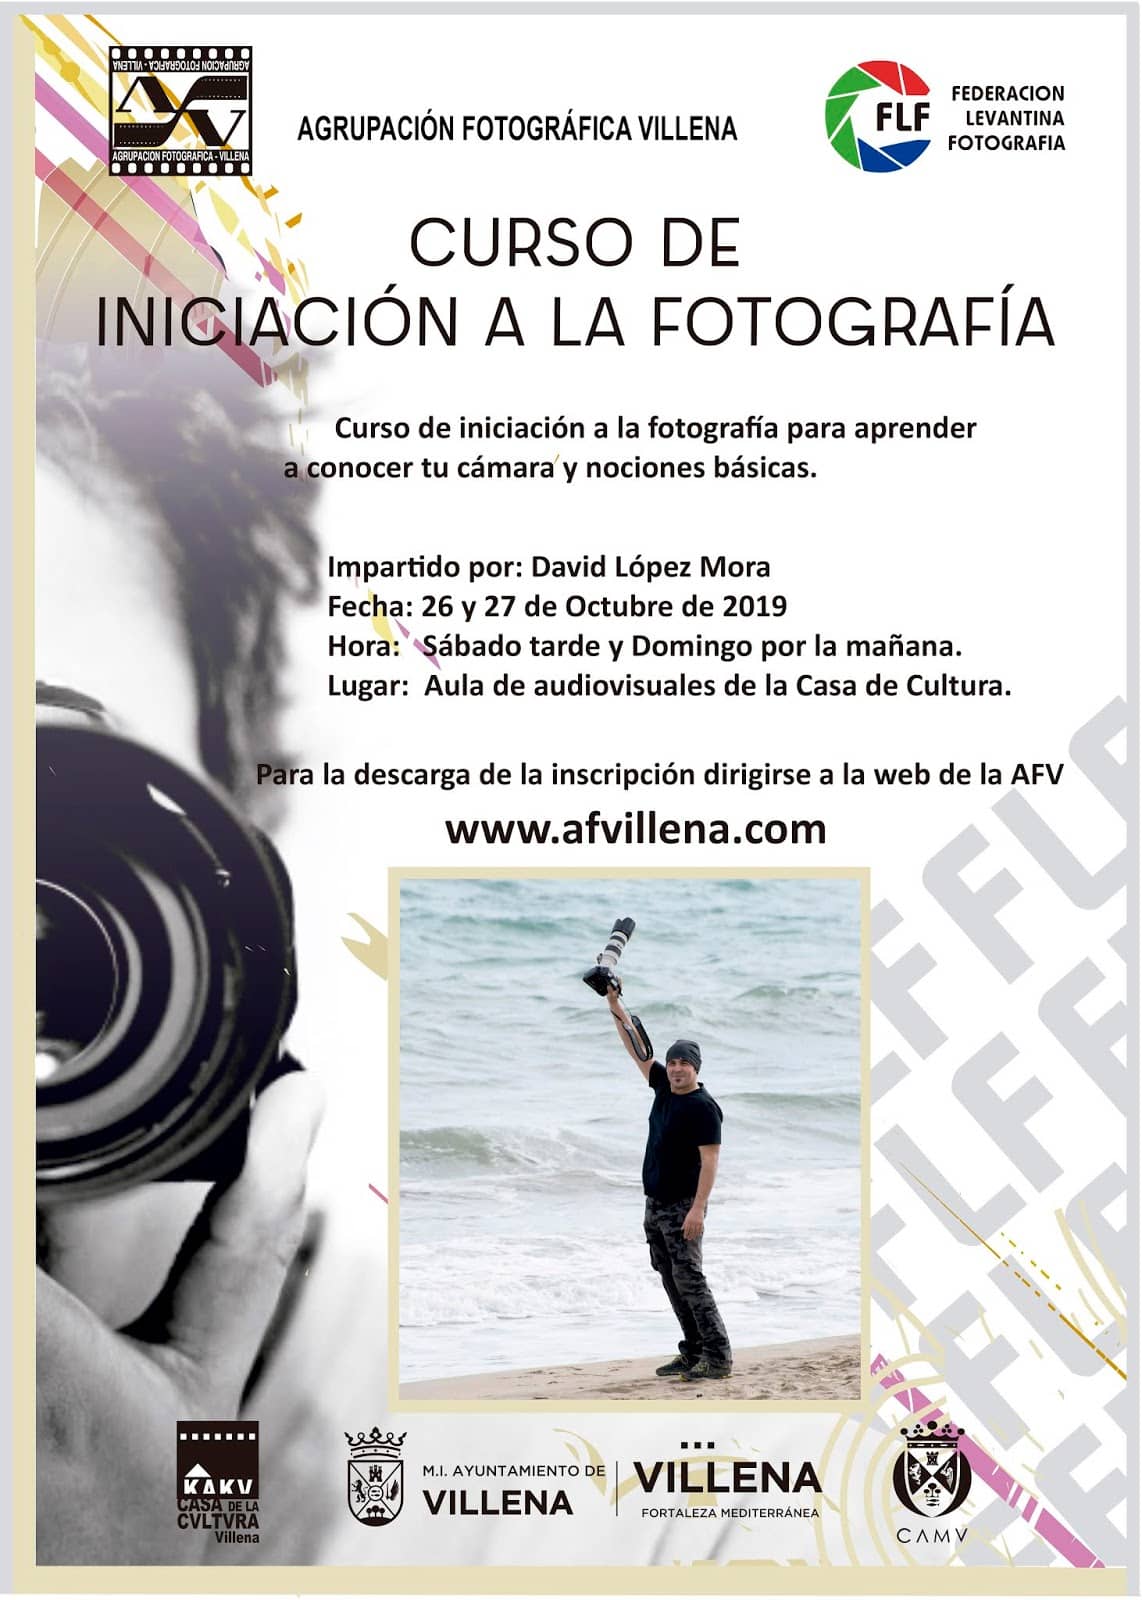 AFV organiza un curso de iniciación a la fotografía